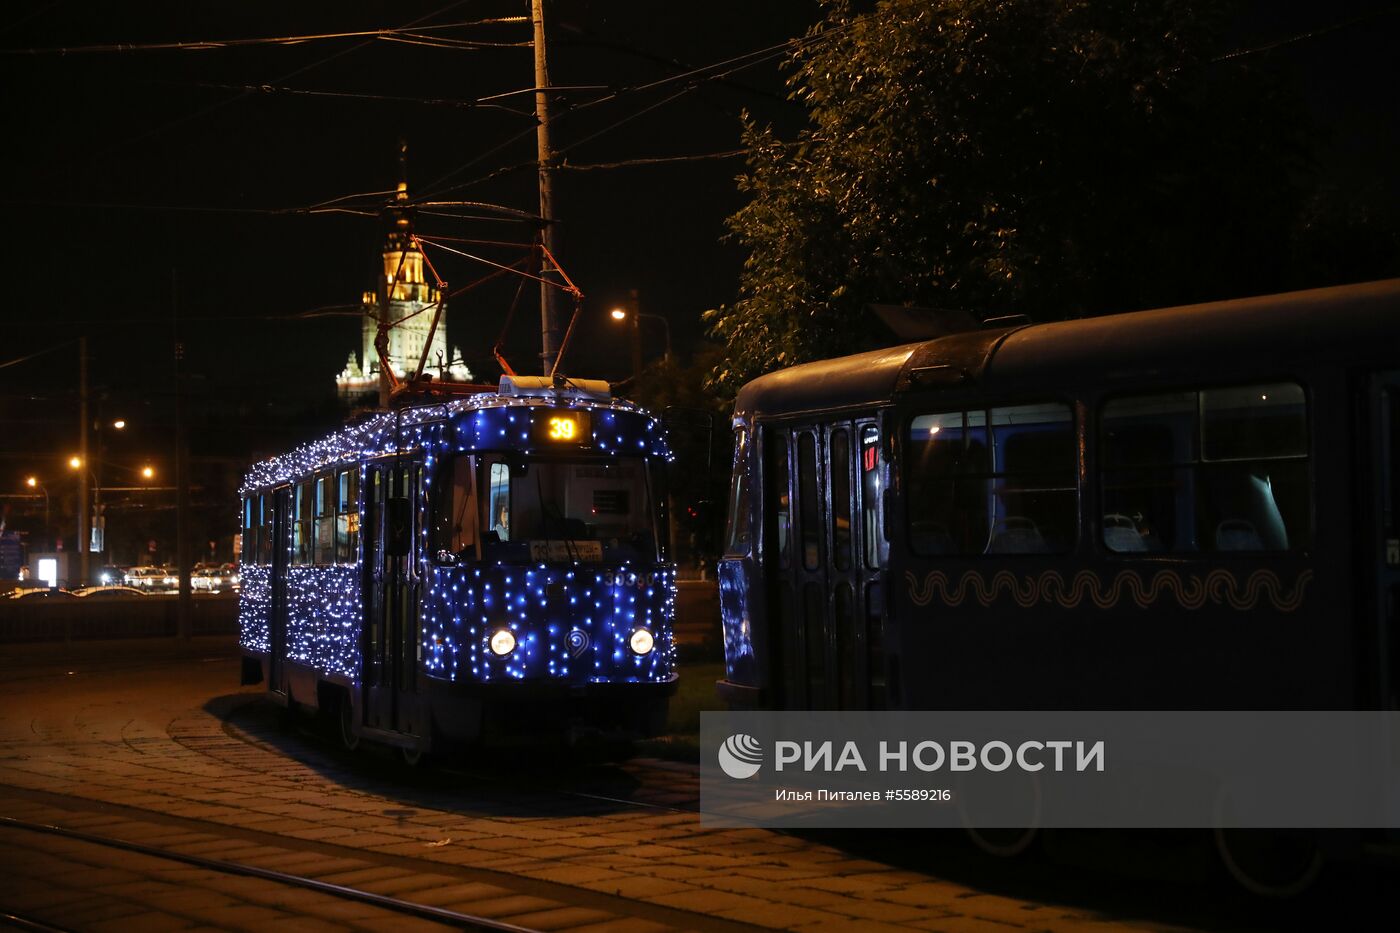 Праздничный трамвай ко Дню московского транспорта